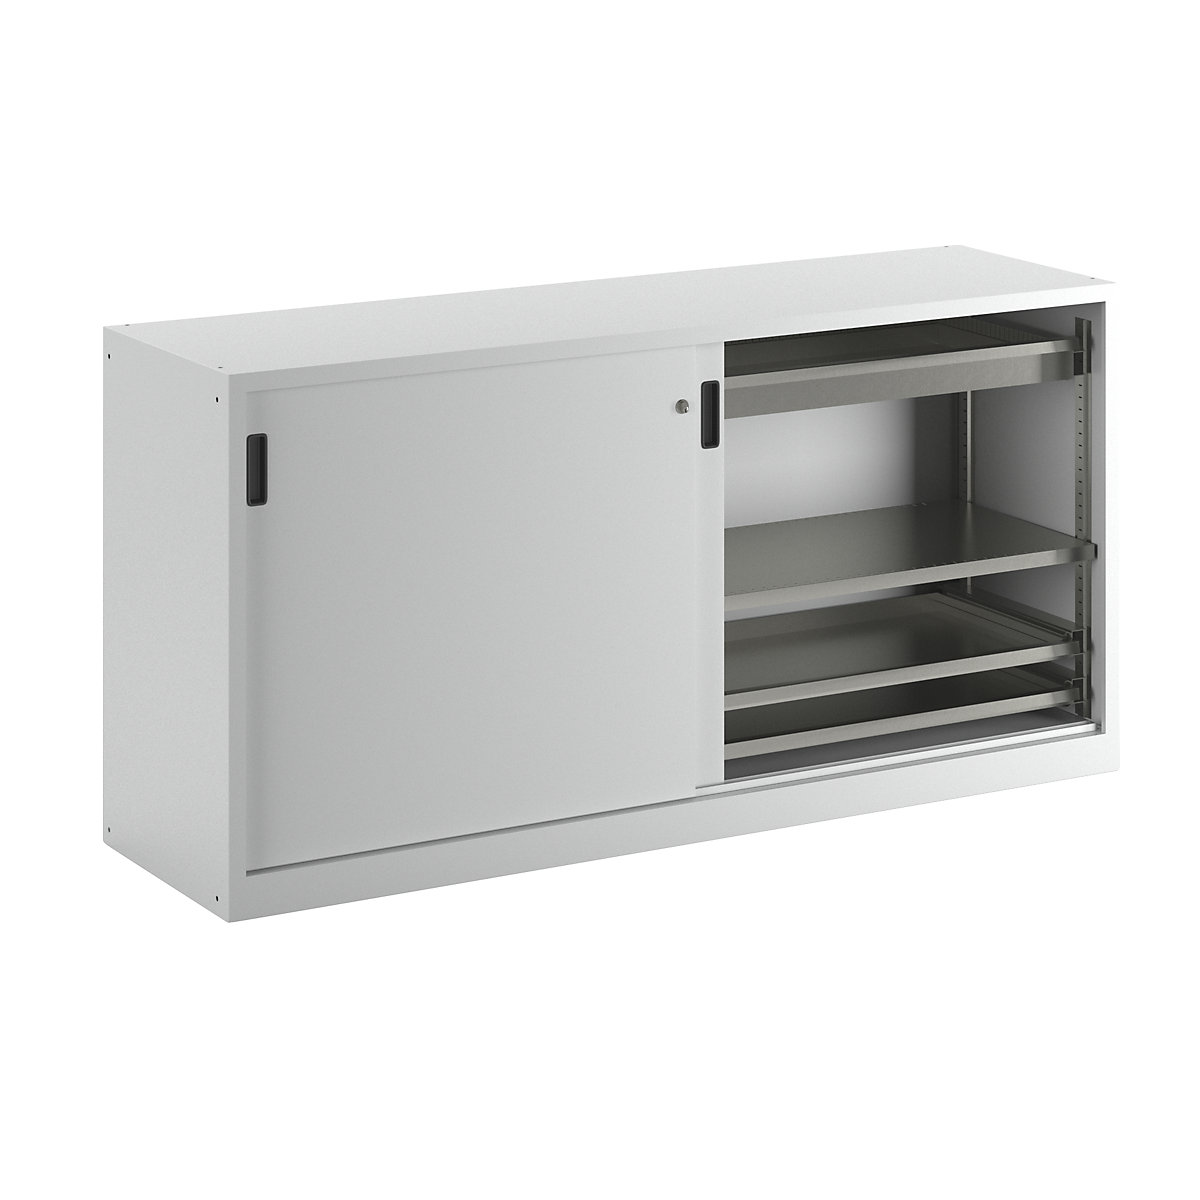 Sliding door cupboard with solid panel doors – LISTA